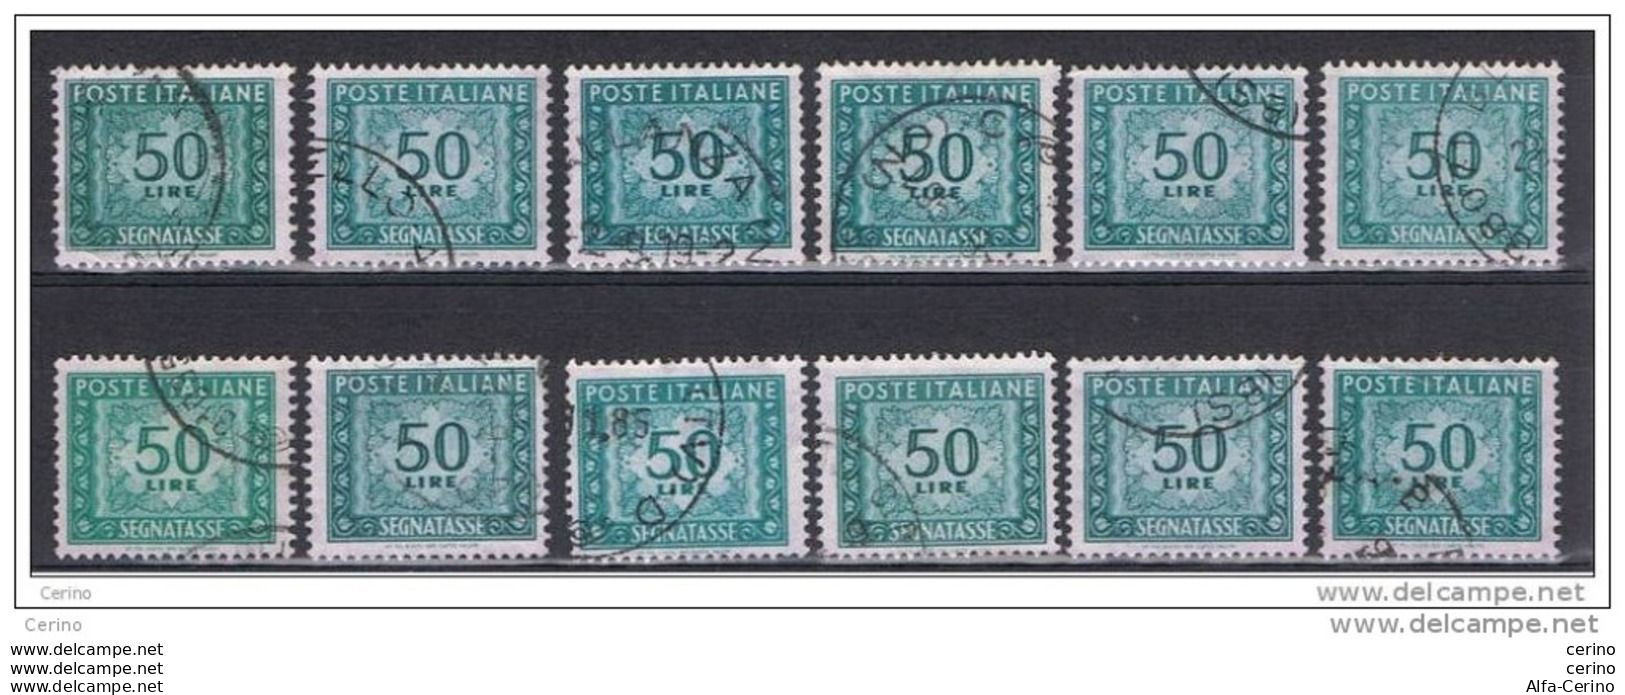 REPUBBLICA:  1955/81  TASSE  ST. -  £. 50  VERDE  AZZURRO  US. -  RIPETUTO  12  VOLTE  -  SASS. 118 - Taxe